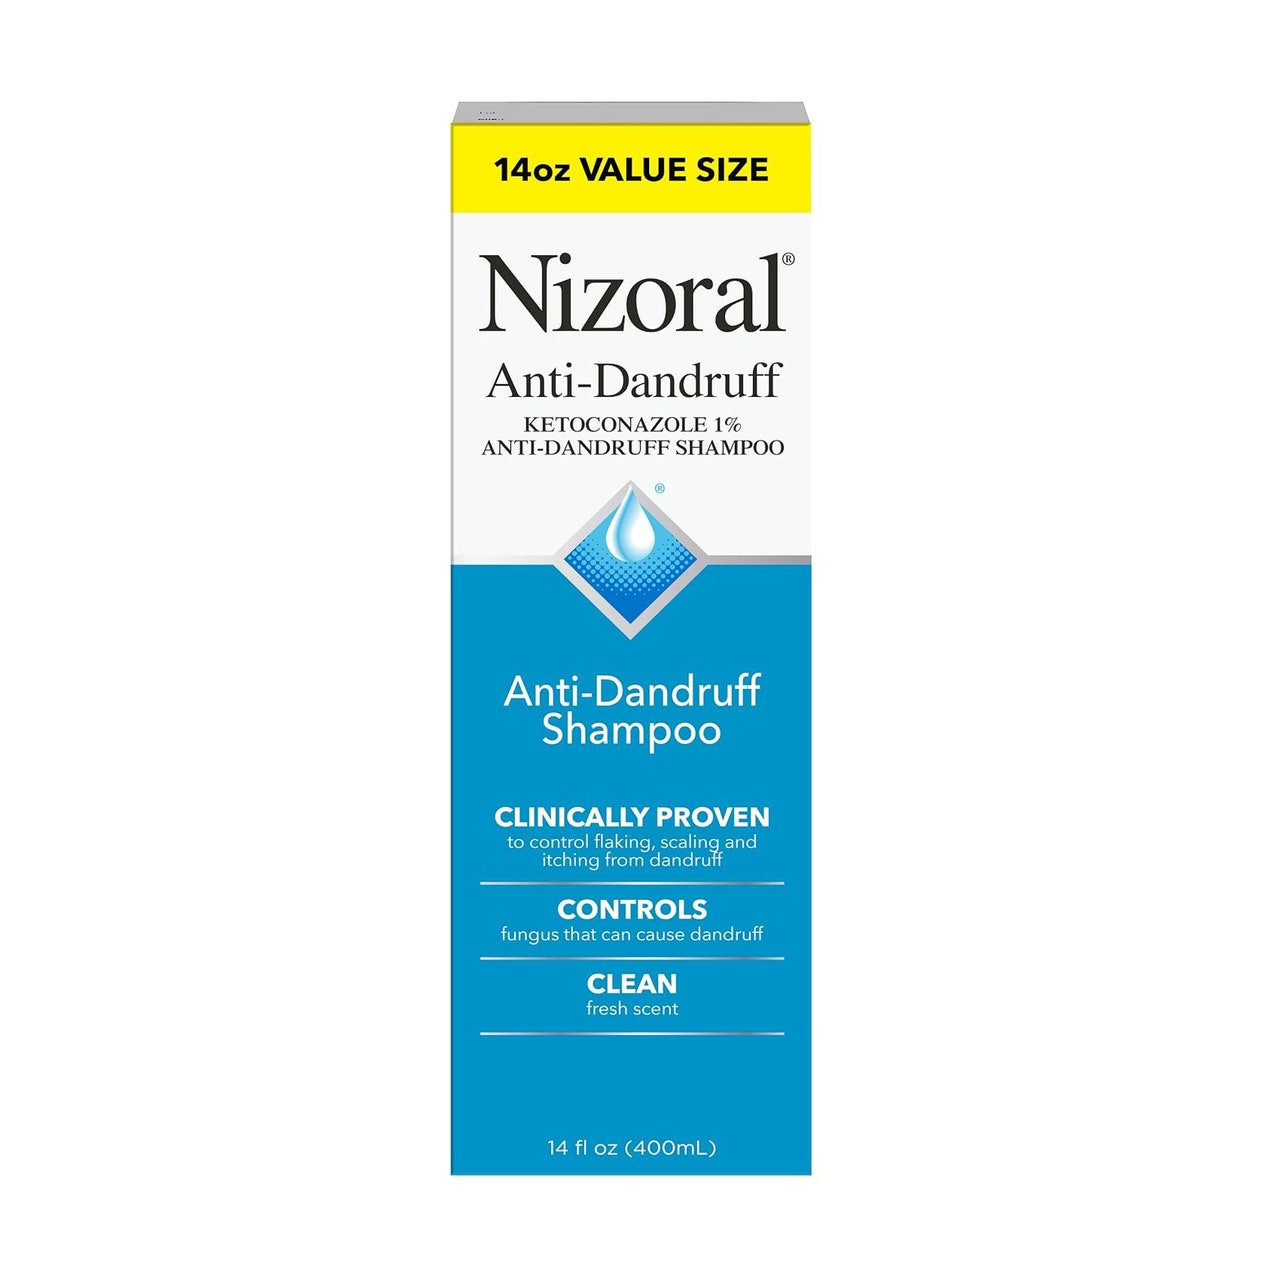 Nizoral AD Anti-Schuppen-Shampoo, blaue und weiße Box auf weißem Hintergrund